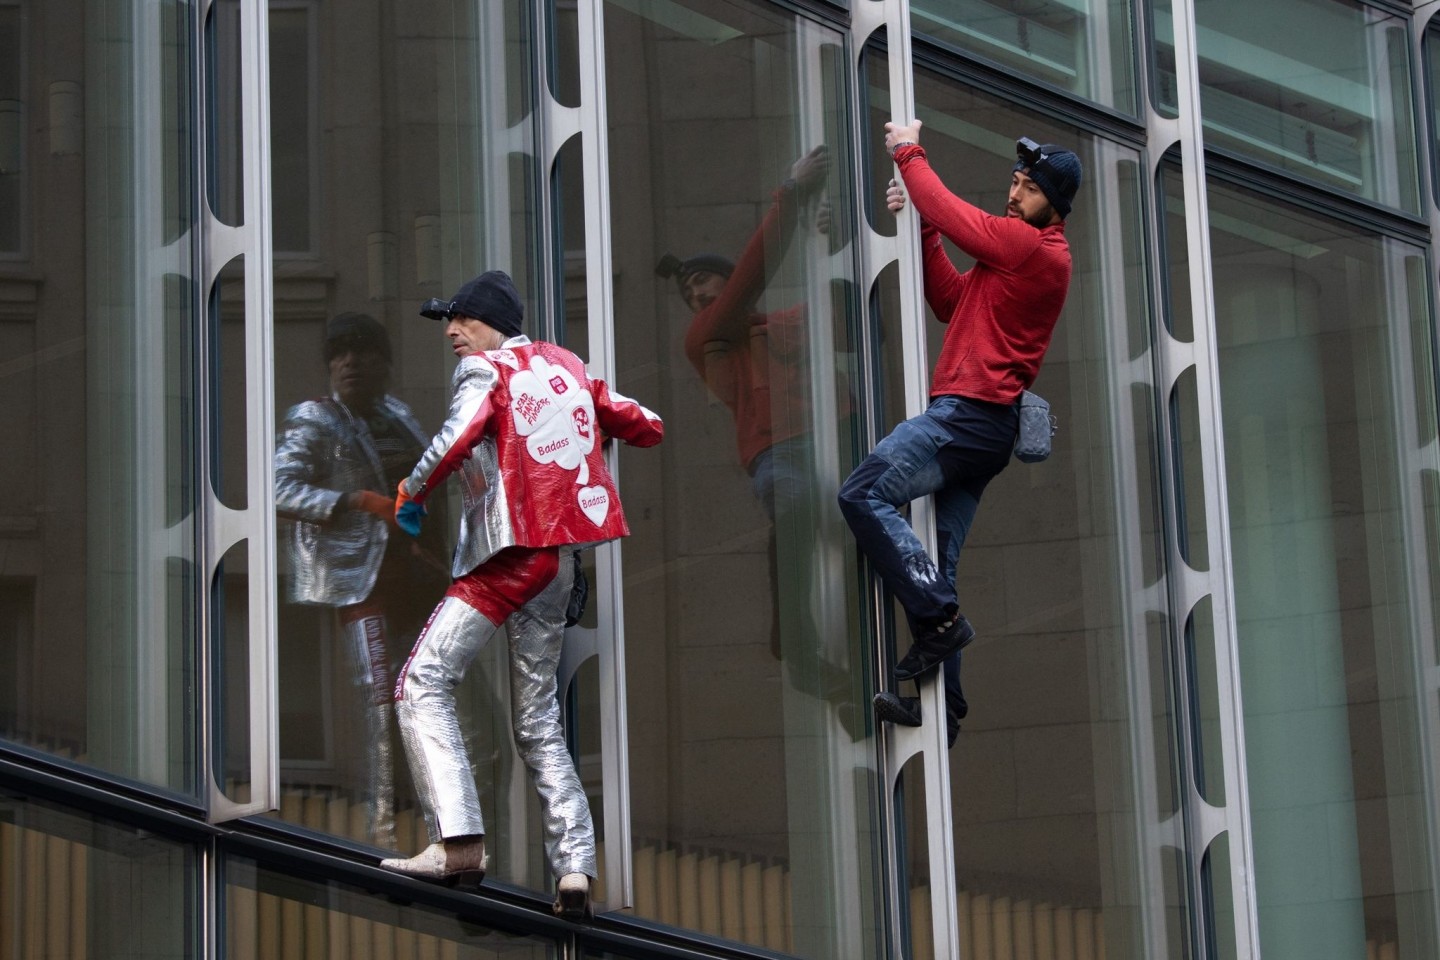 Die beiden Extremkletterer Leo Urban (r) und Alain Robert kletterten ohne jede Sicherung an der Fassade des Skyper-Hochhauses in Frankfurt am Main hinauf.